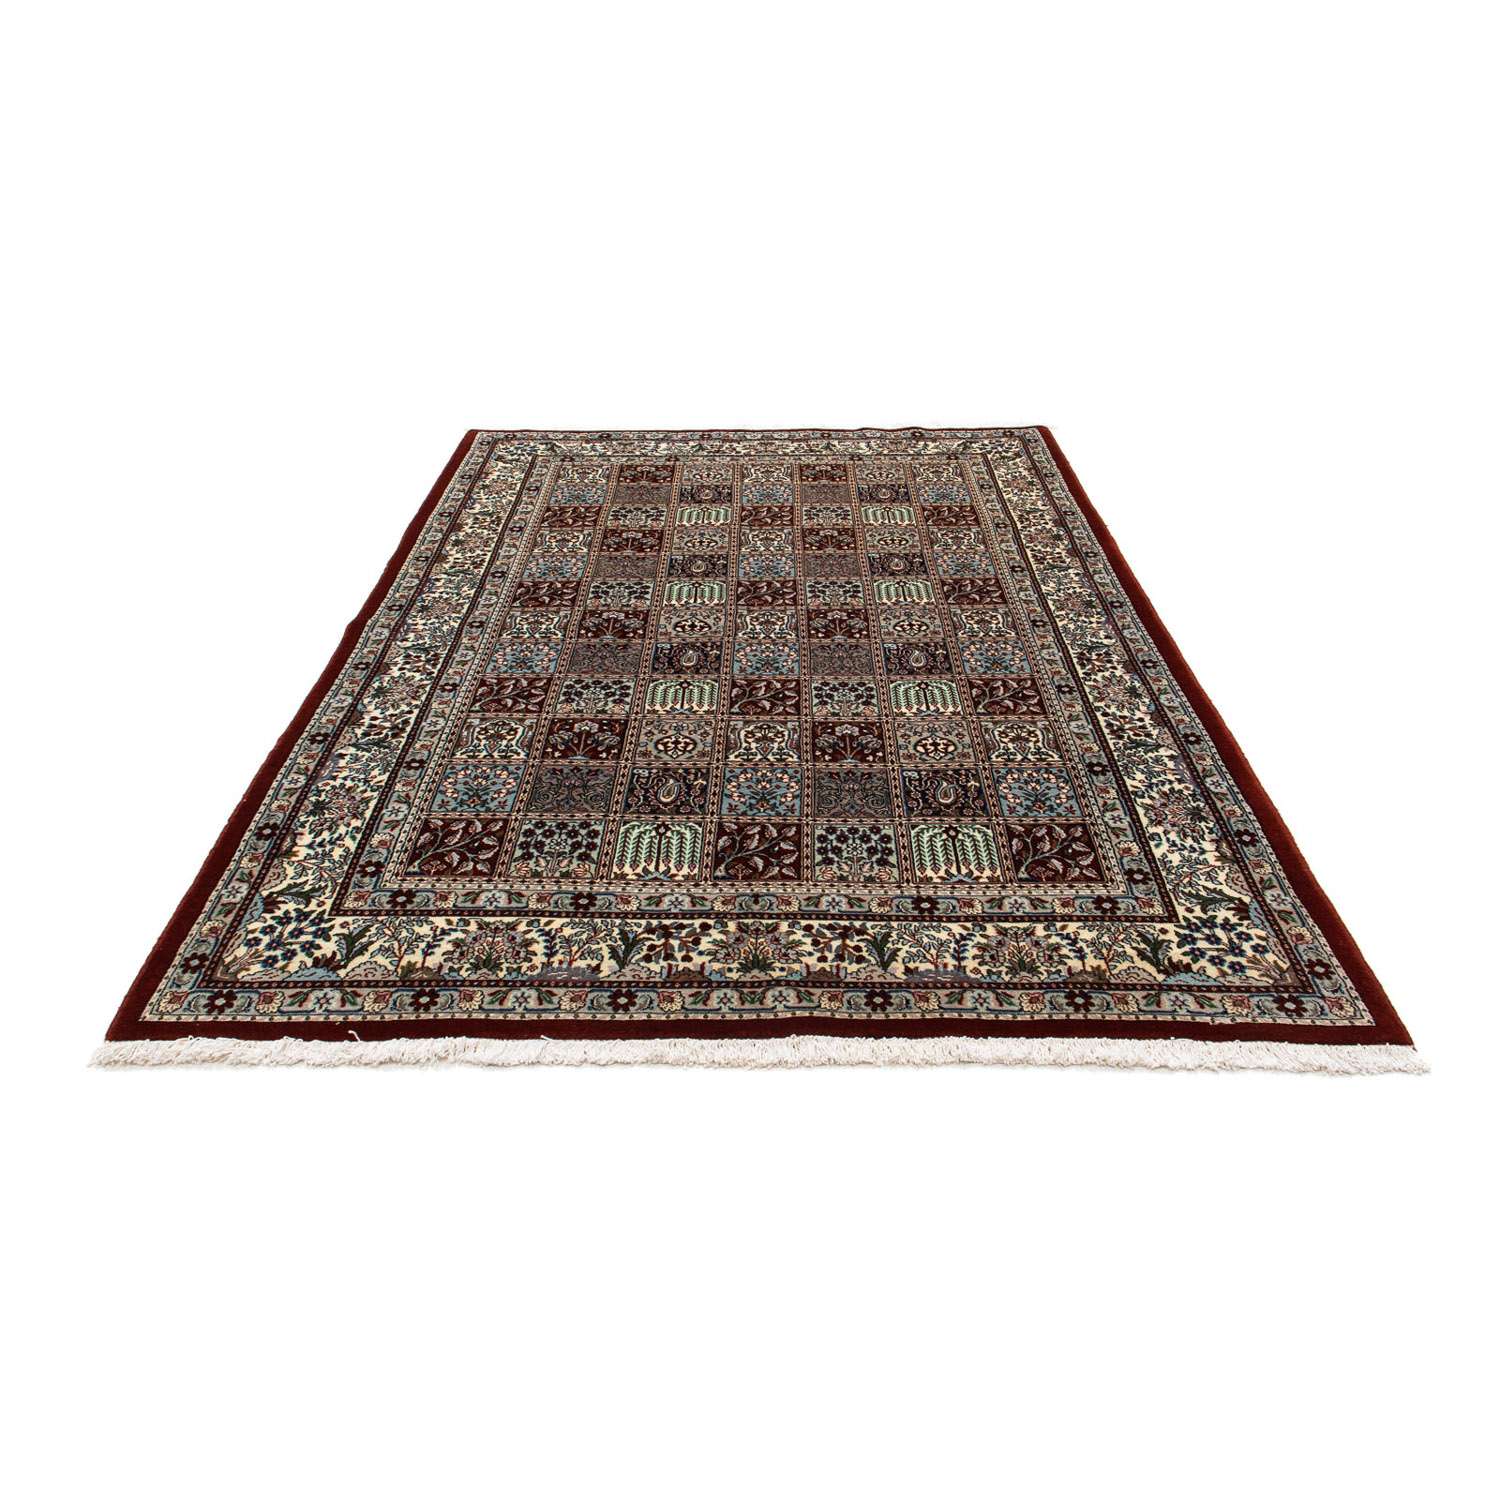 Persisk teppe - klassisk - 241 x 159 cm - flerfarget